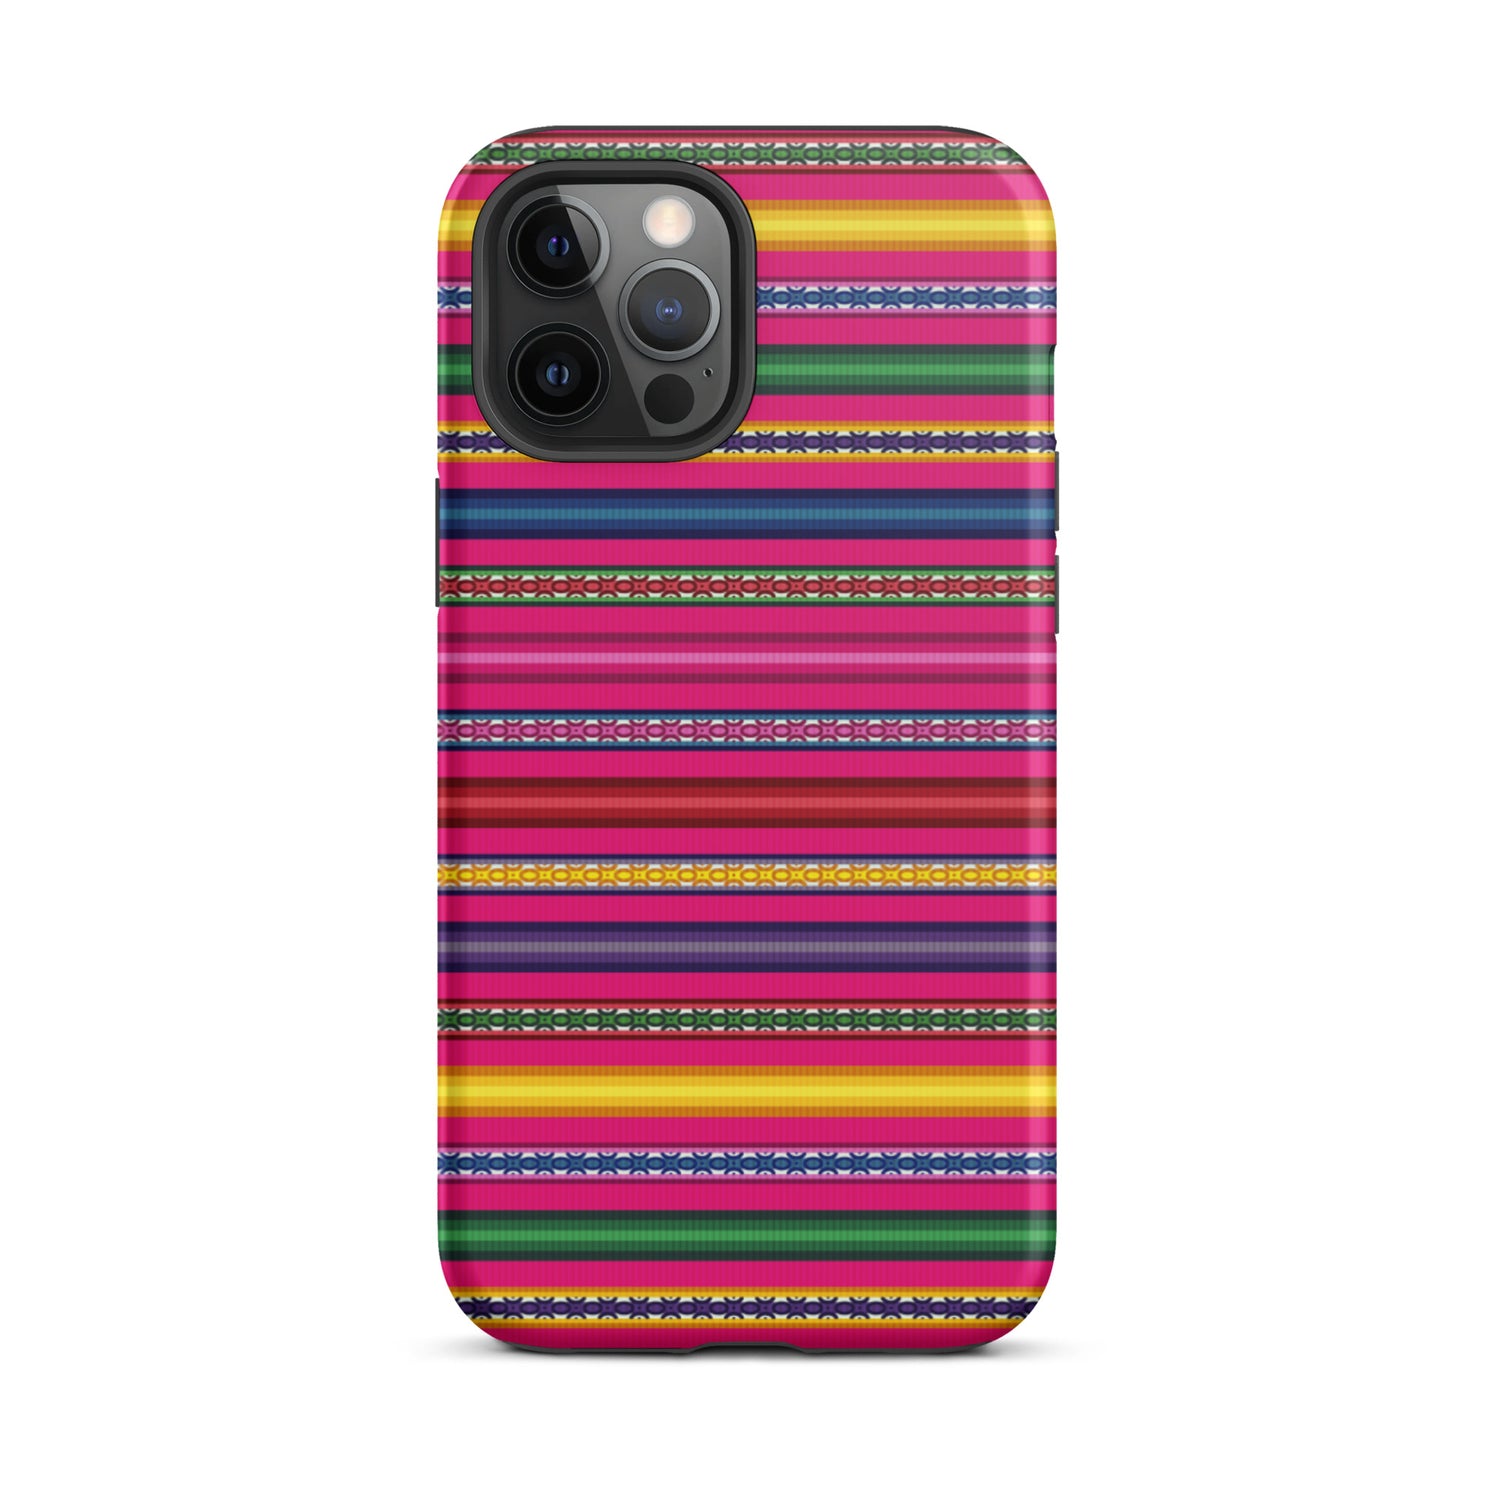 Peruvian Tough iPhone 12 Pro Max case